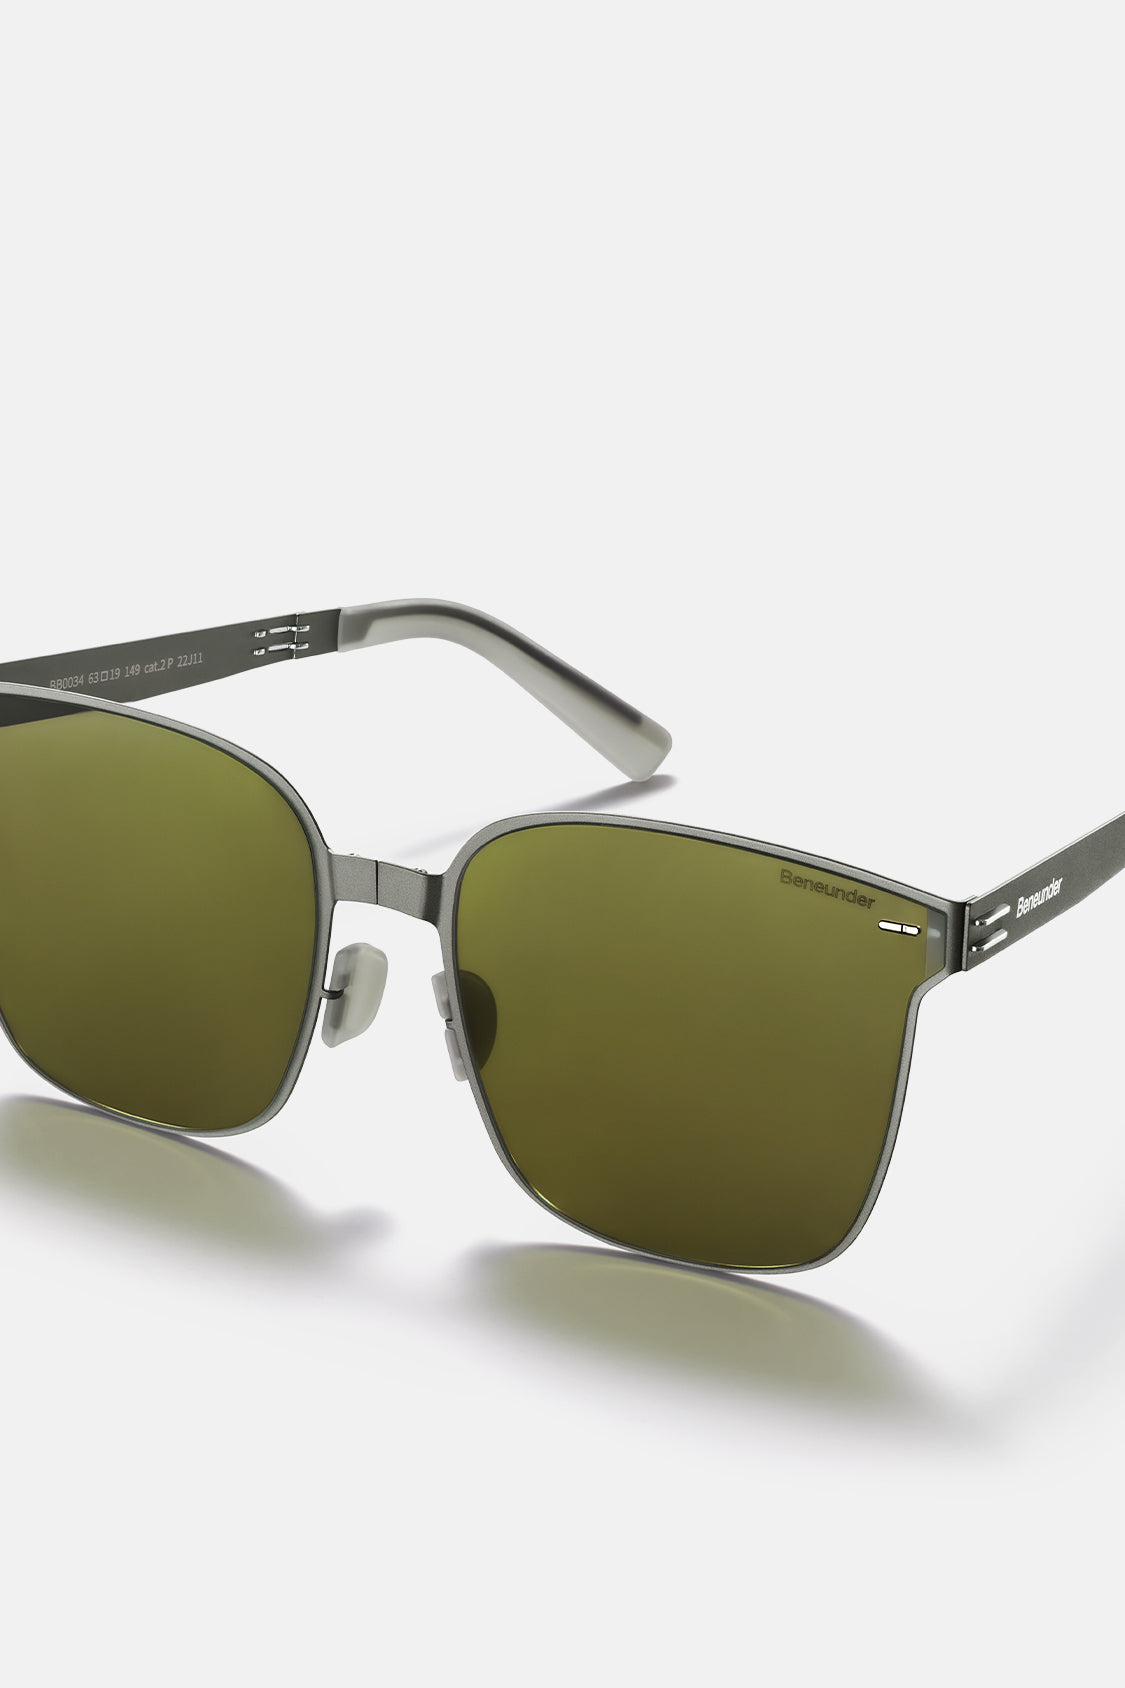 Polarized Folding Sunglasses for Women&Men, Beneunder UV400 Protection  Super Lightweight Designer Square Sunglasses for Driving, Fishing, Hiking,  Golf-Black